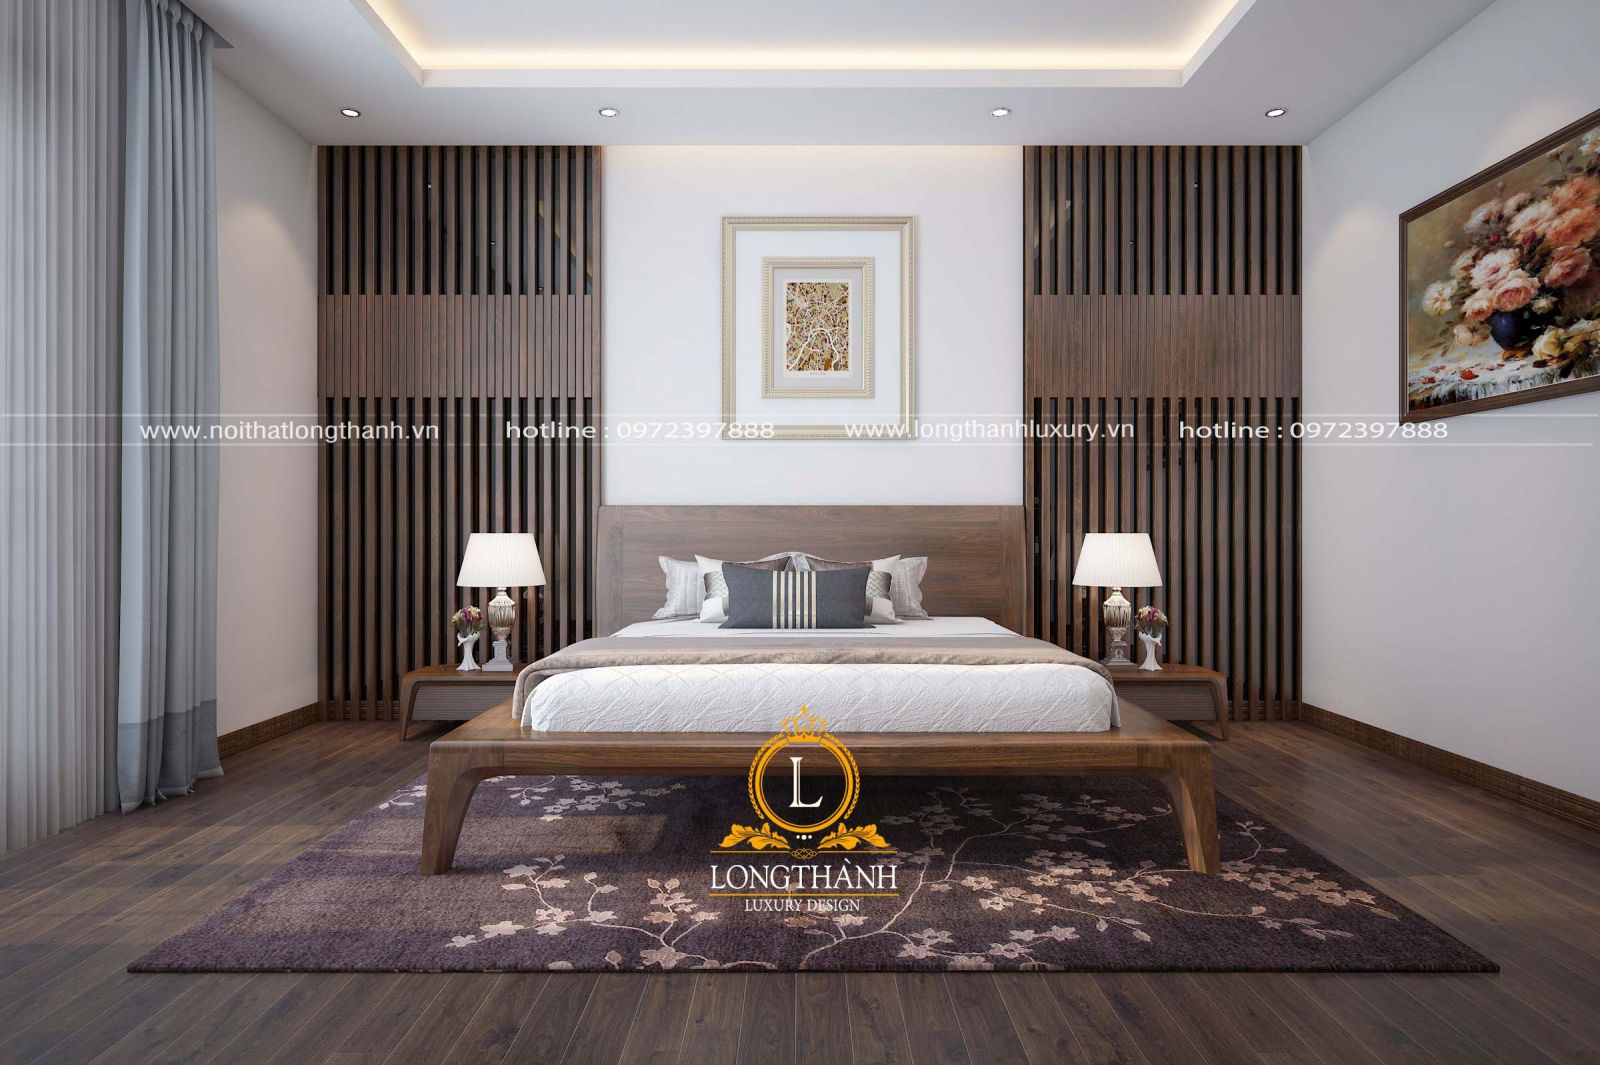 Phòng ngủ có thể sử dụng các nội thất trang trí theo sở thích cá nhân để tạo không gian riêng 